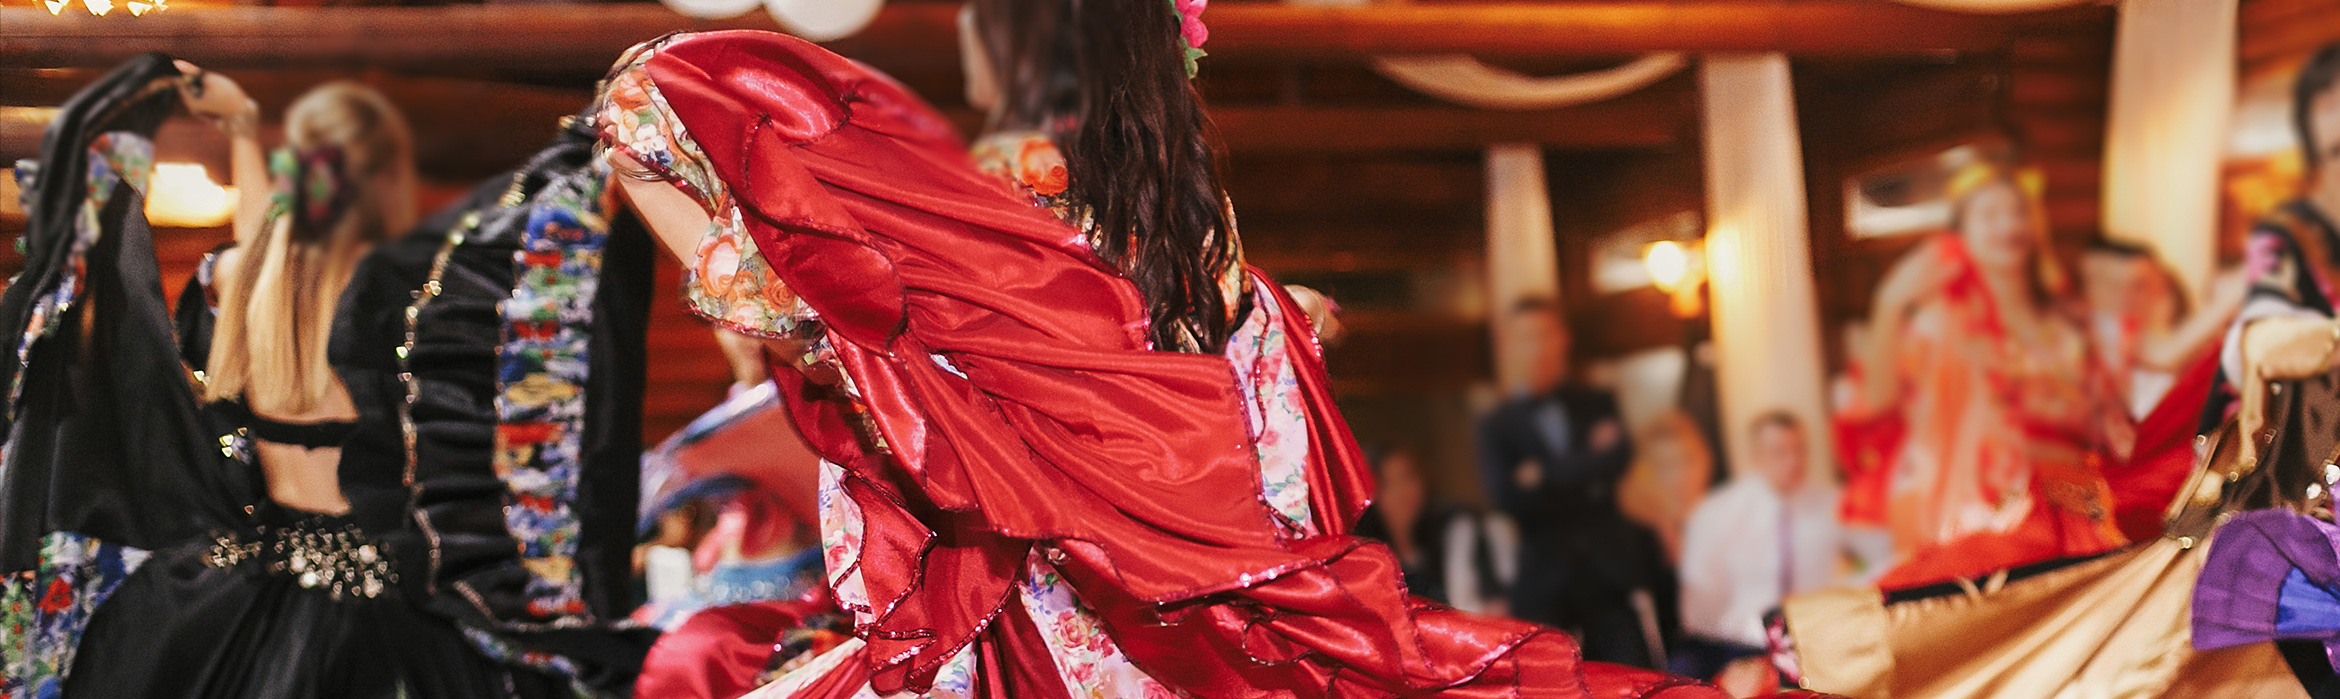 Mujeres bailando en traje floral tradicional en un festival de danza gitana